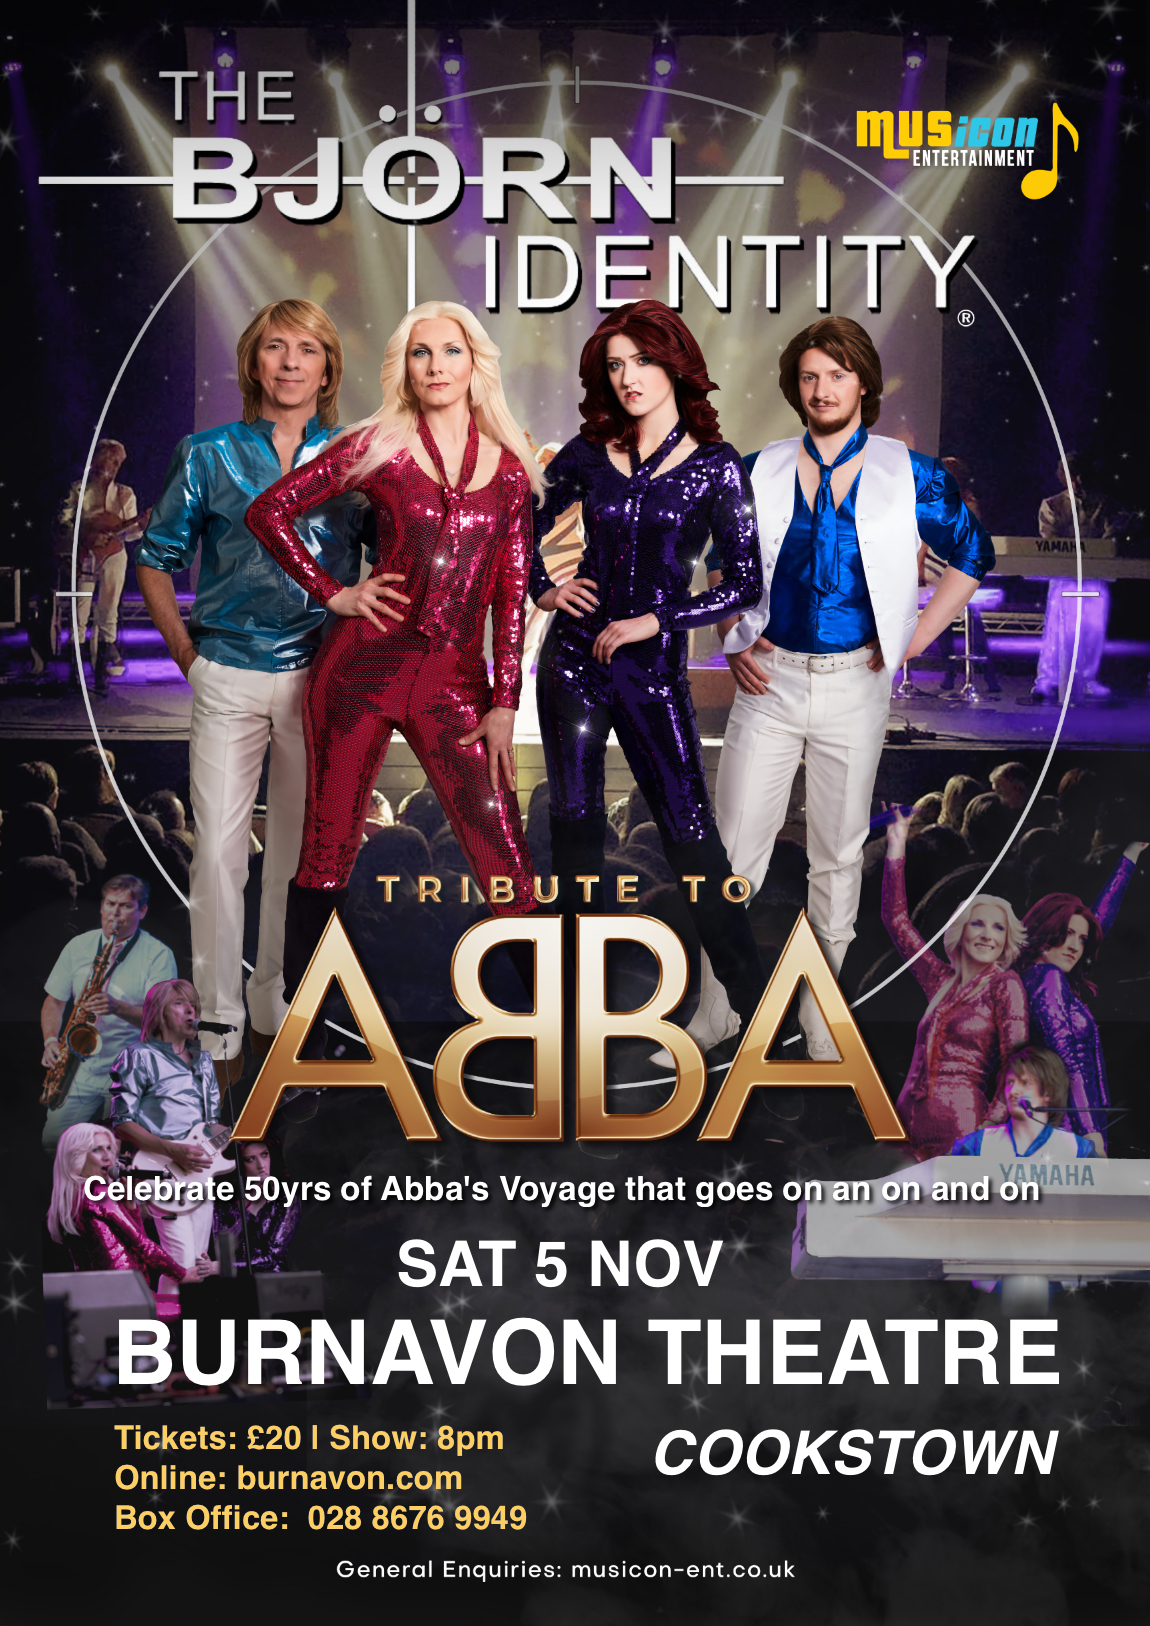 Burnavon Theatre - ABBA in Concert The Bjorn Identity